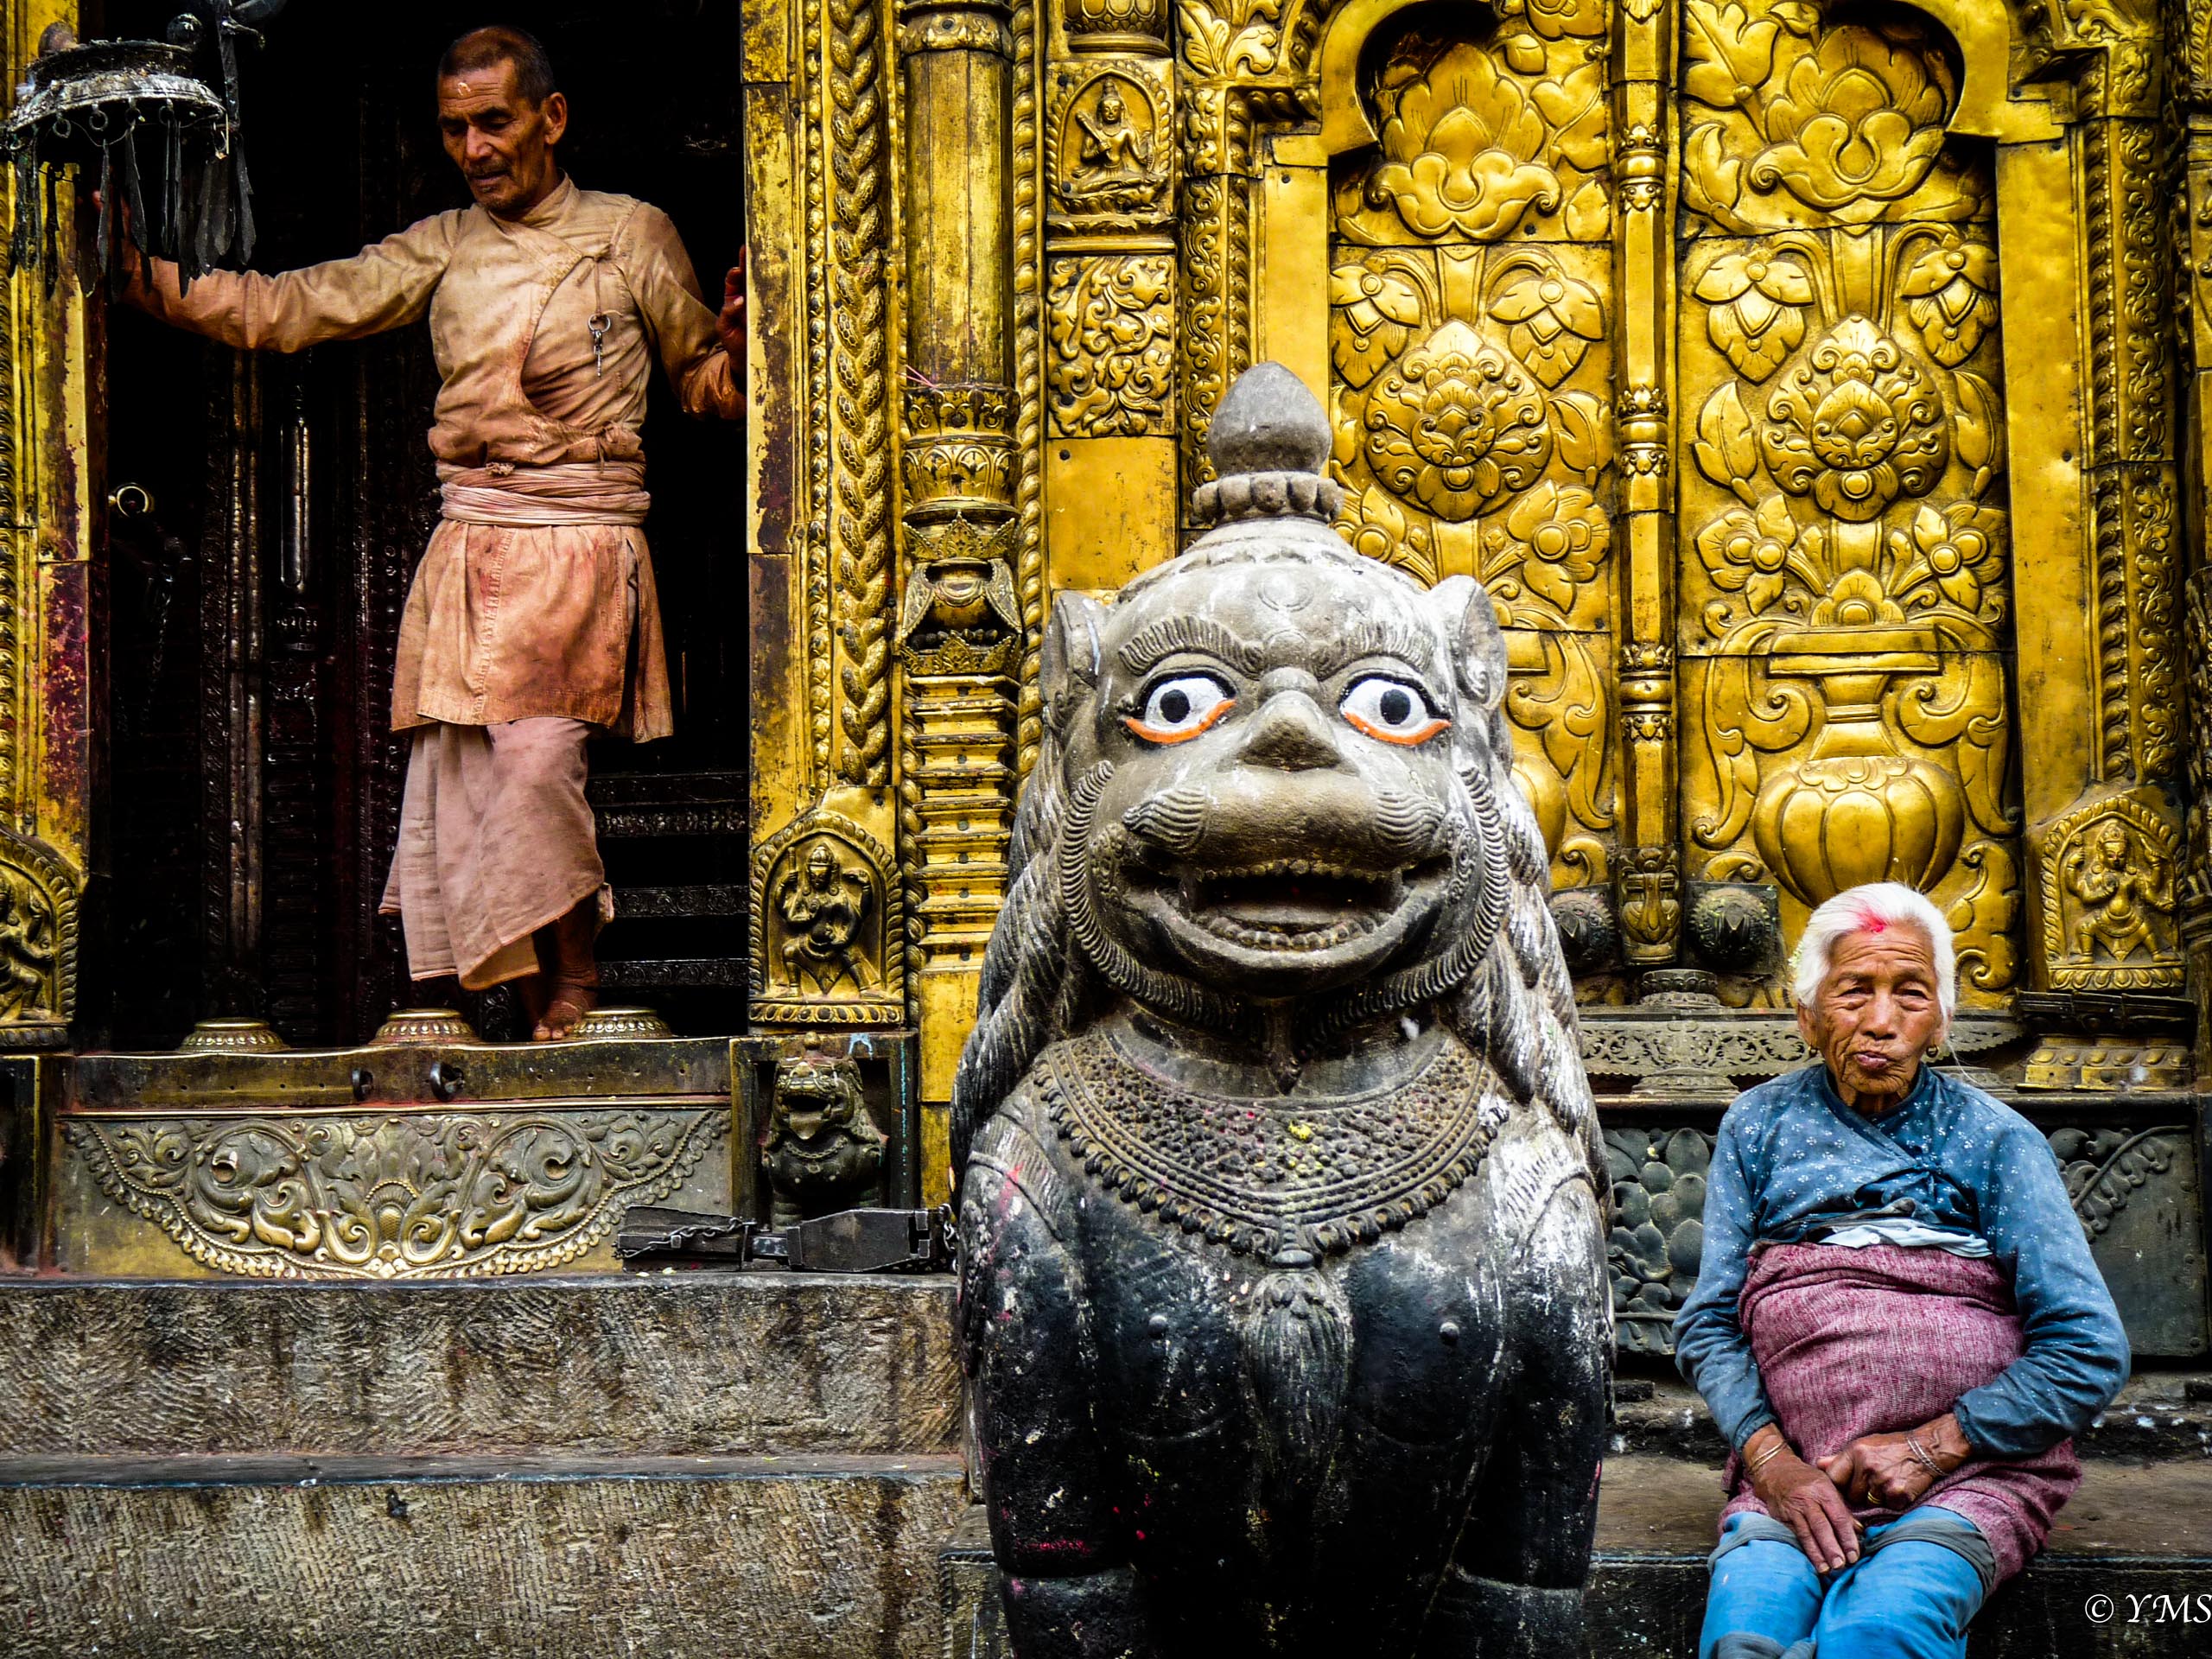 Nepal - Temple scene